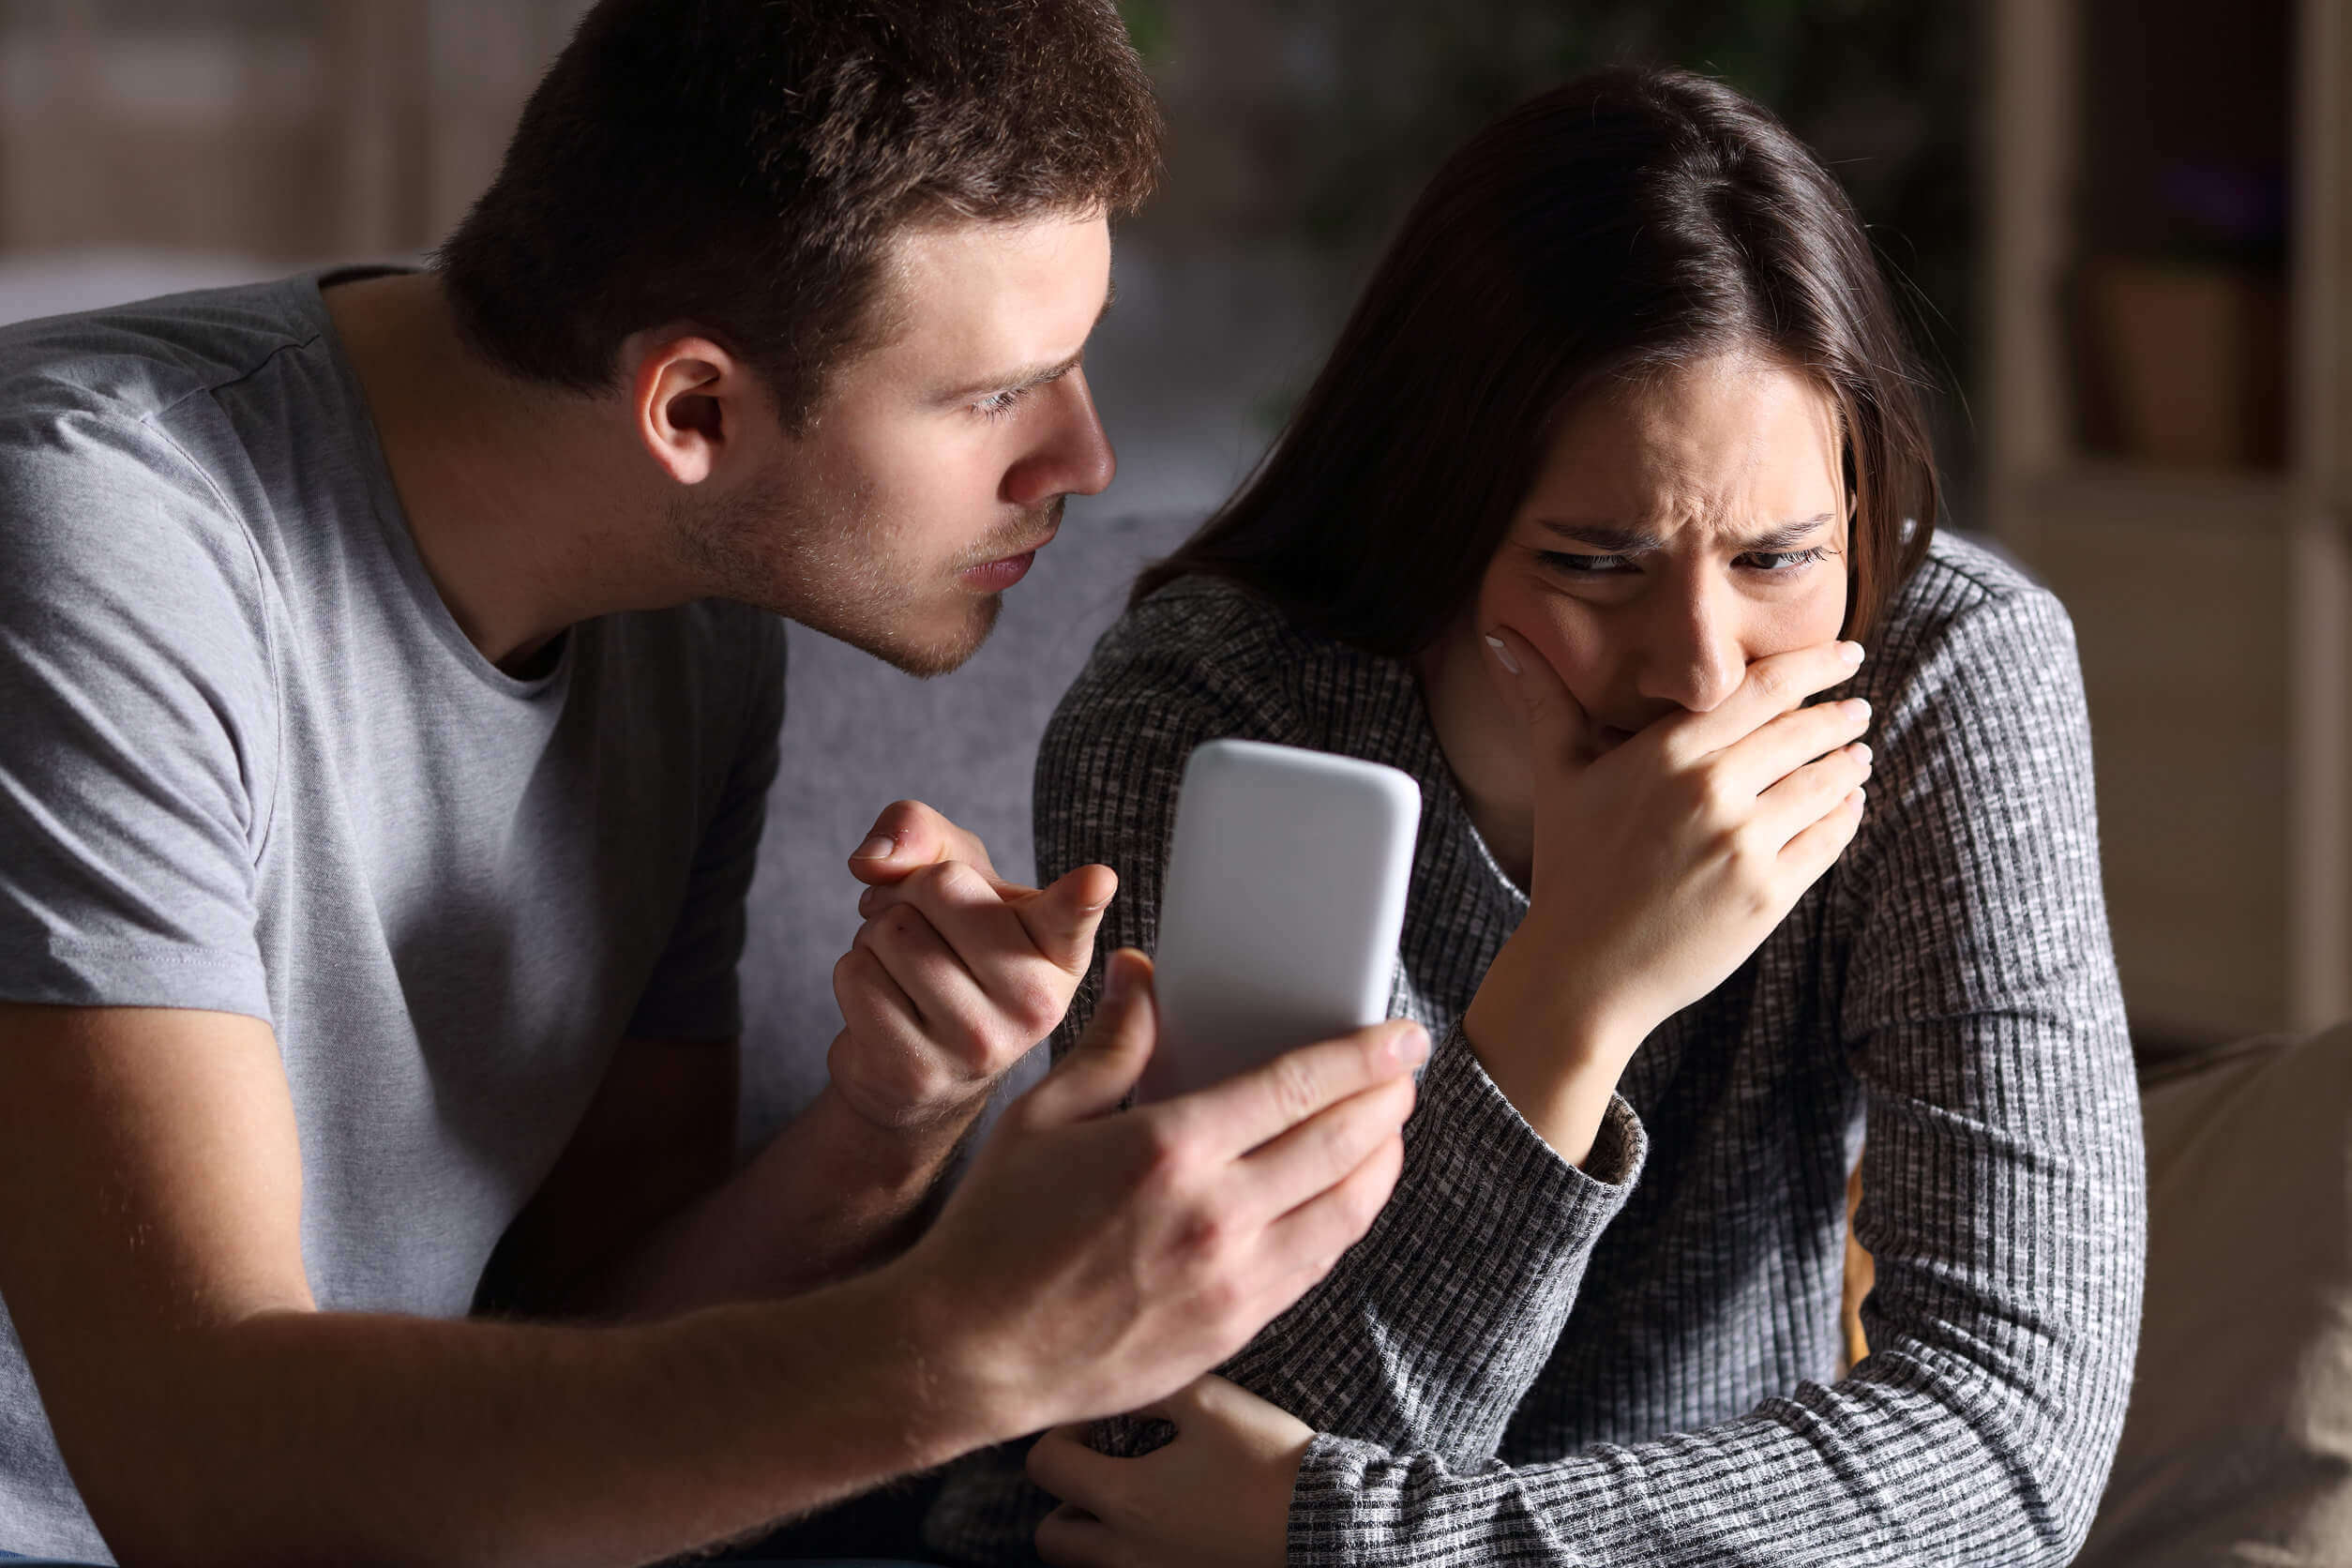 Vred partner med telefon i hånden illustrerer misbrug på WhatsApp